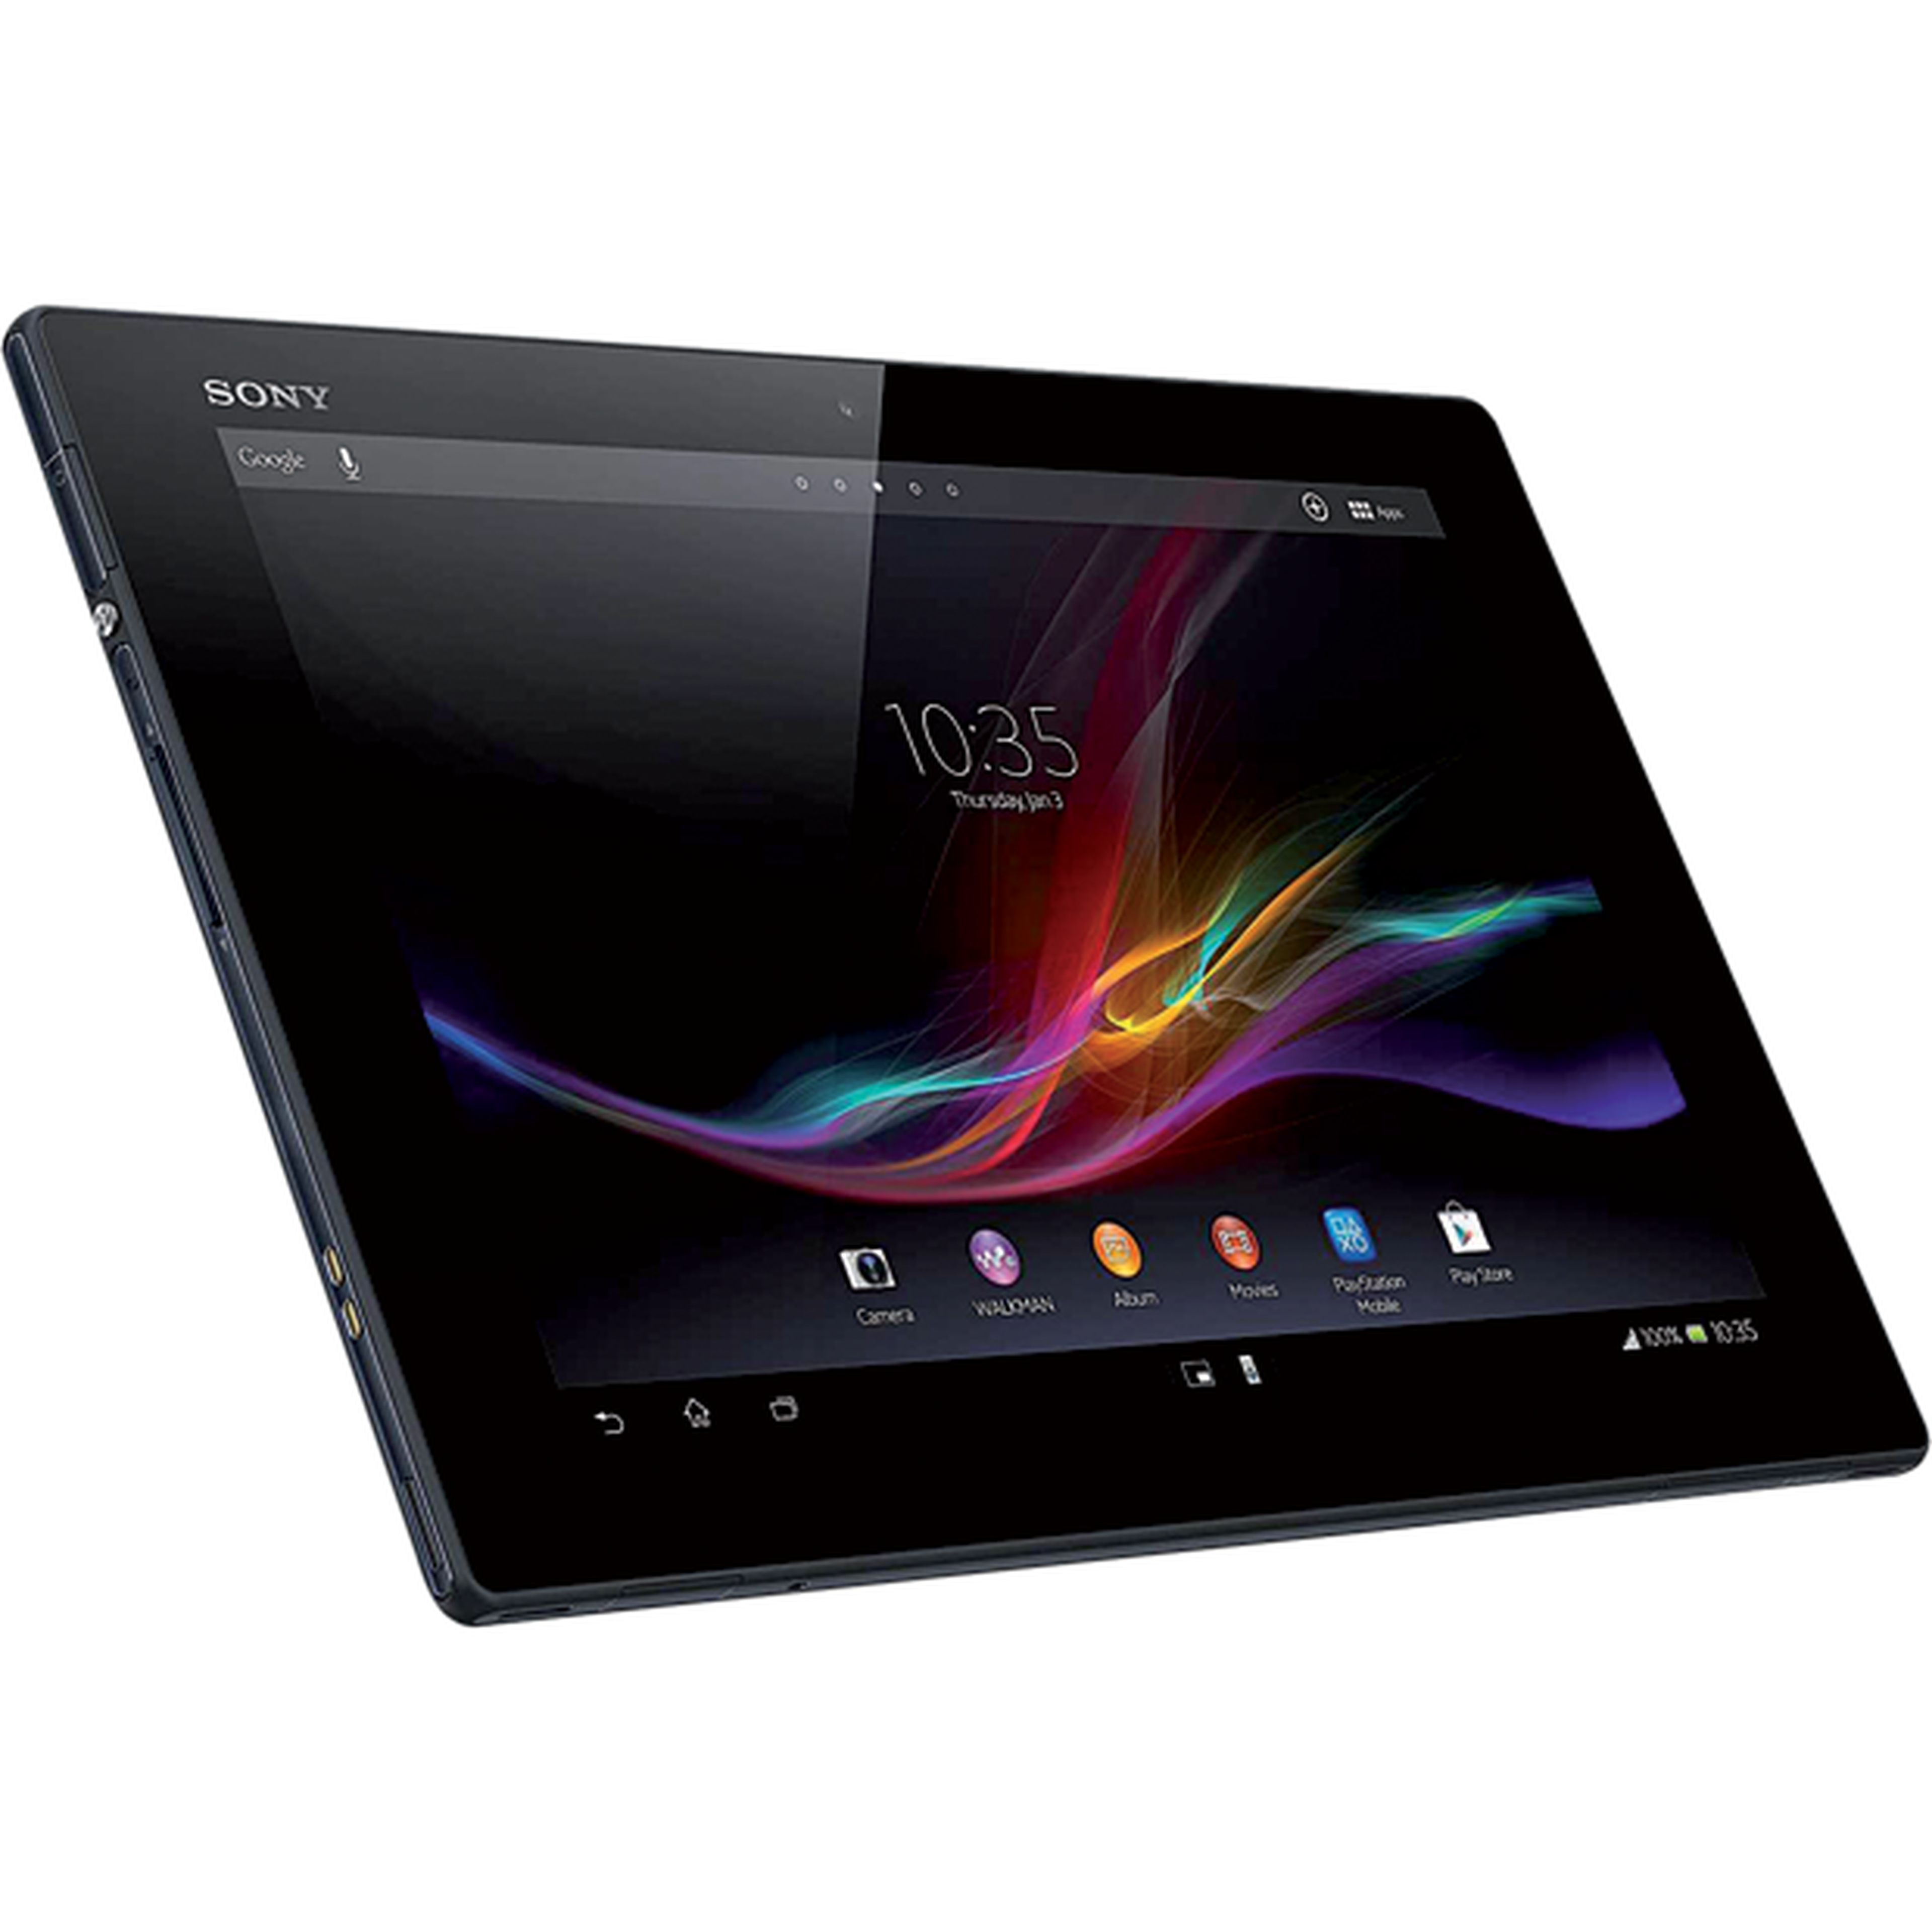 Sony Xperia tablet Z2